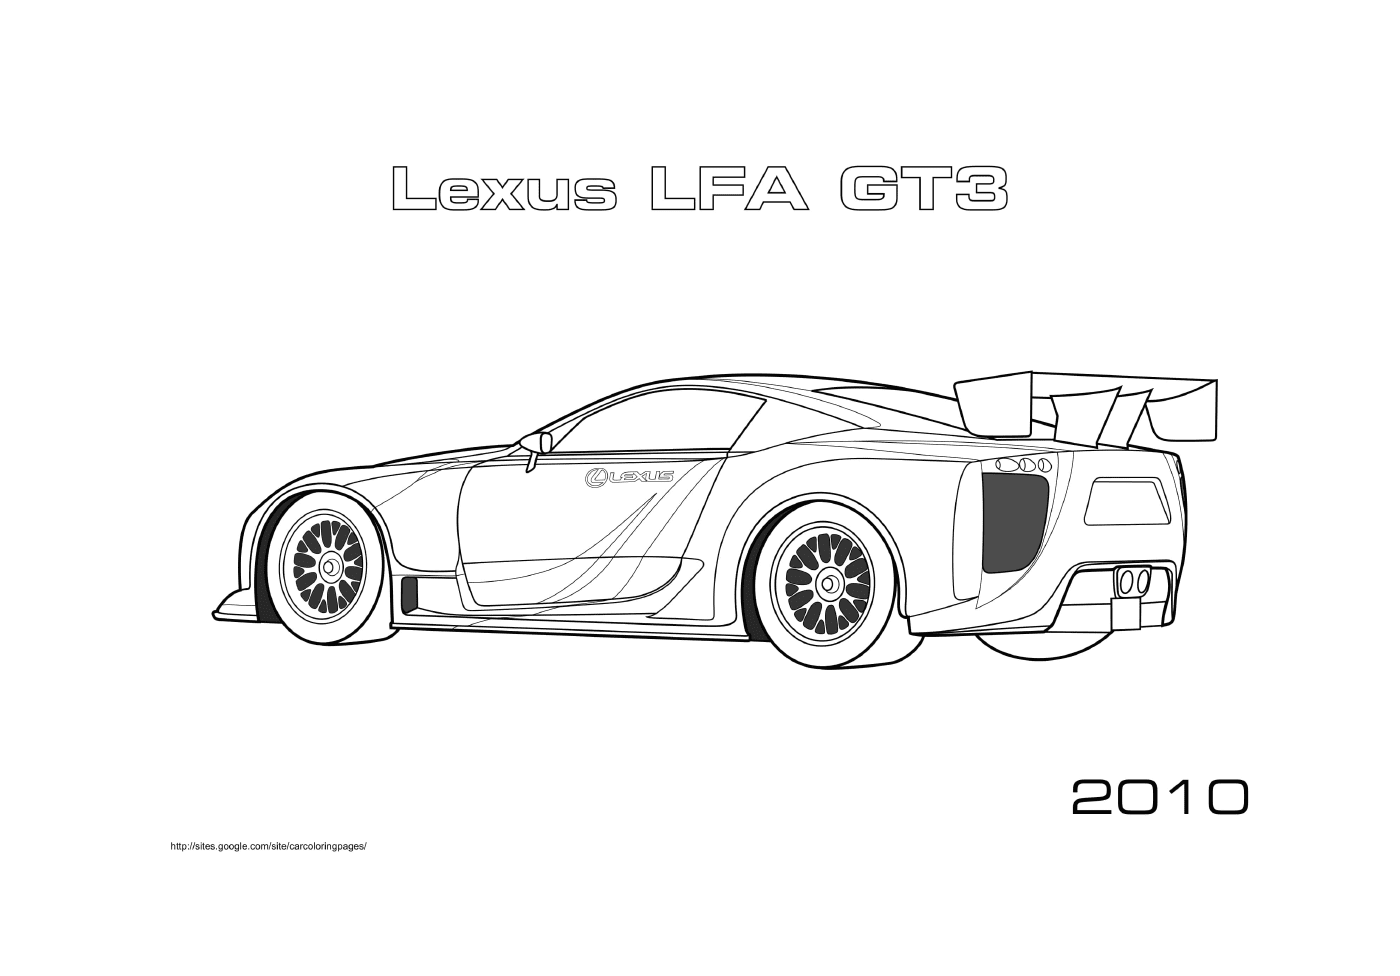  Lexus Lfa Gt3 of 2010 